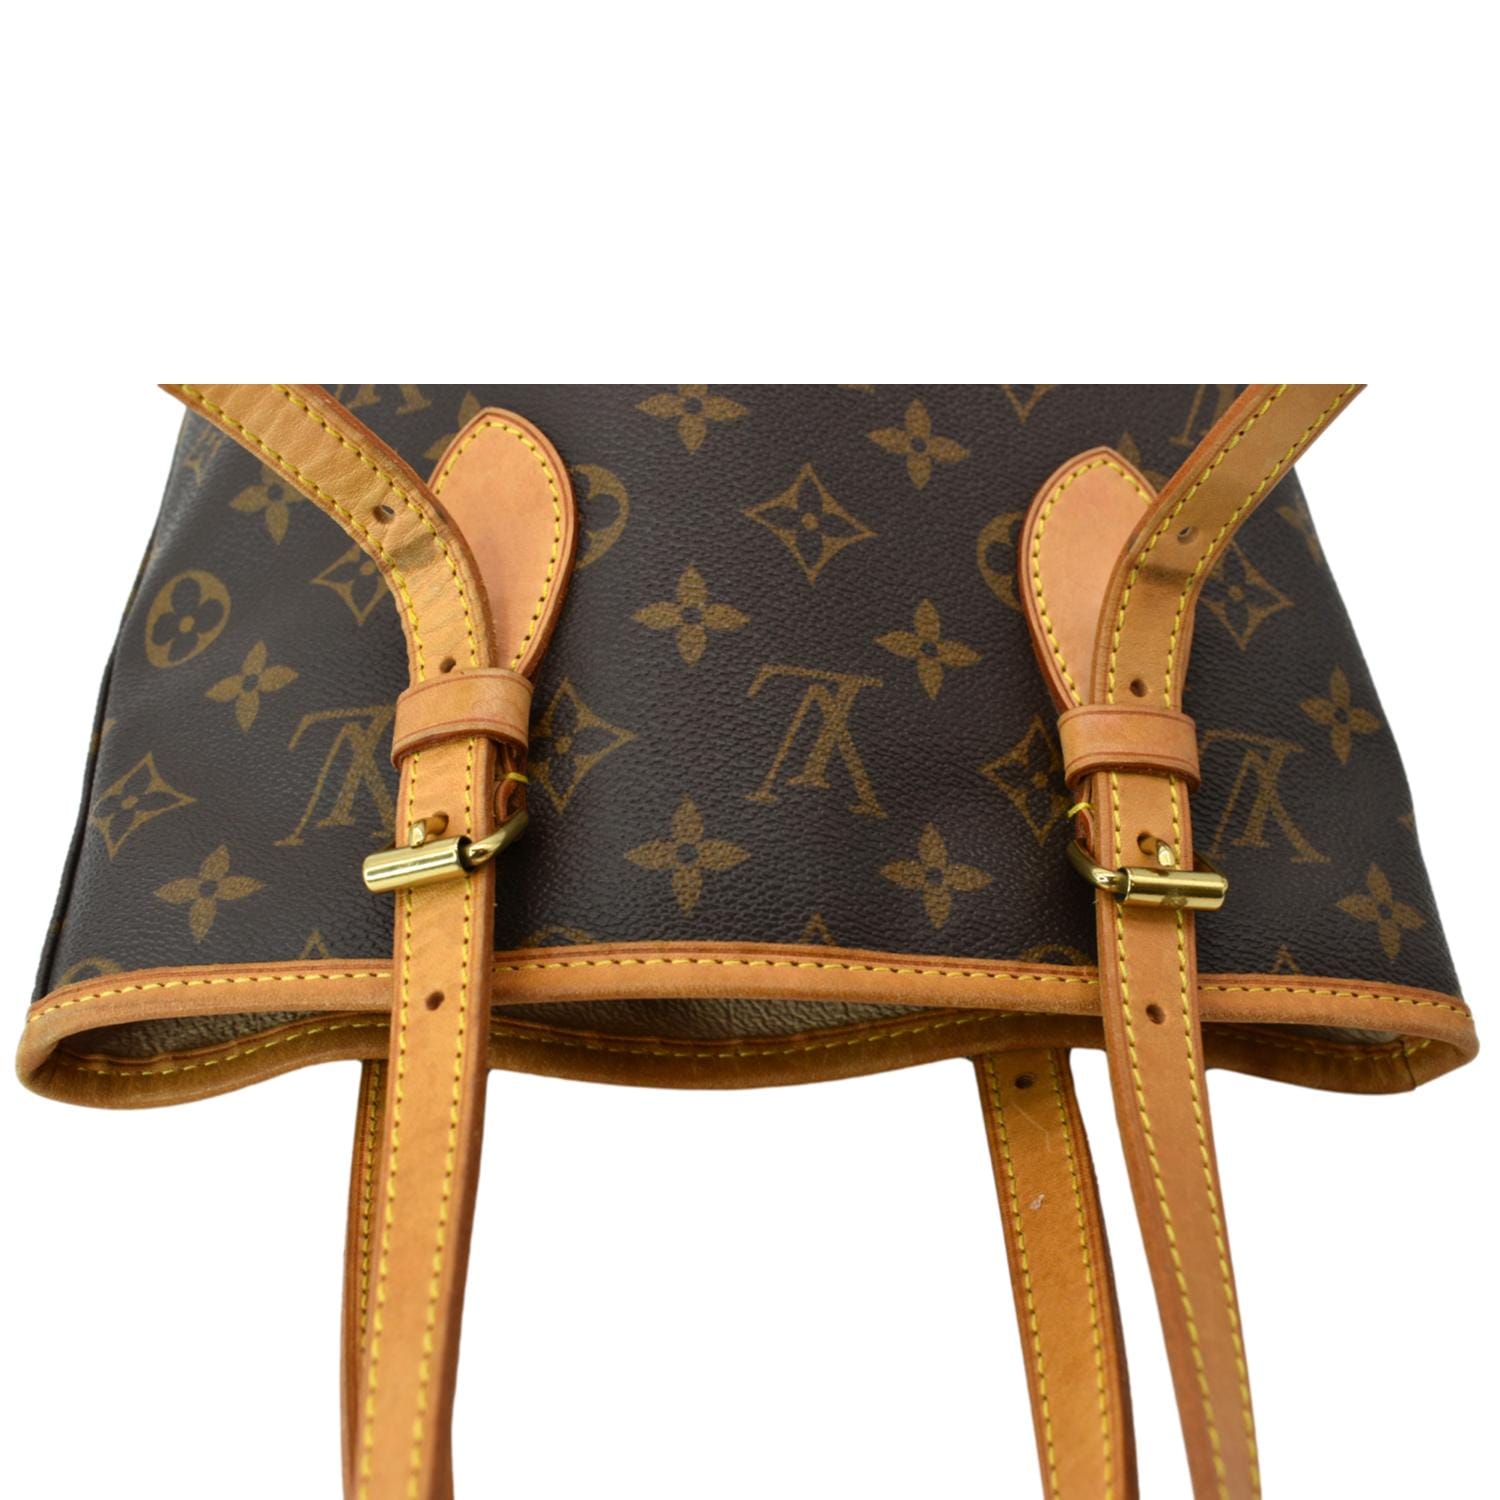 Louis Vuitton Monogram Canvas Petit Bucket Bag on SALE